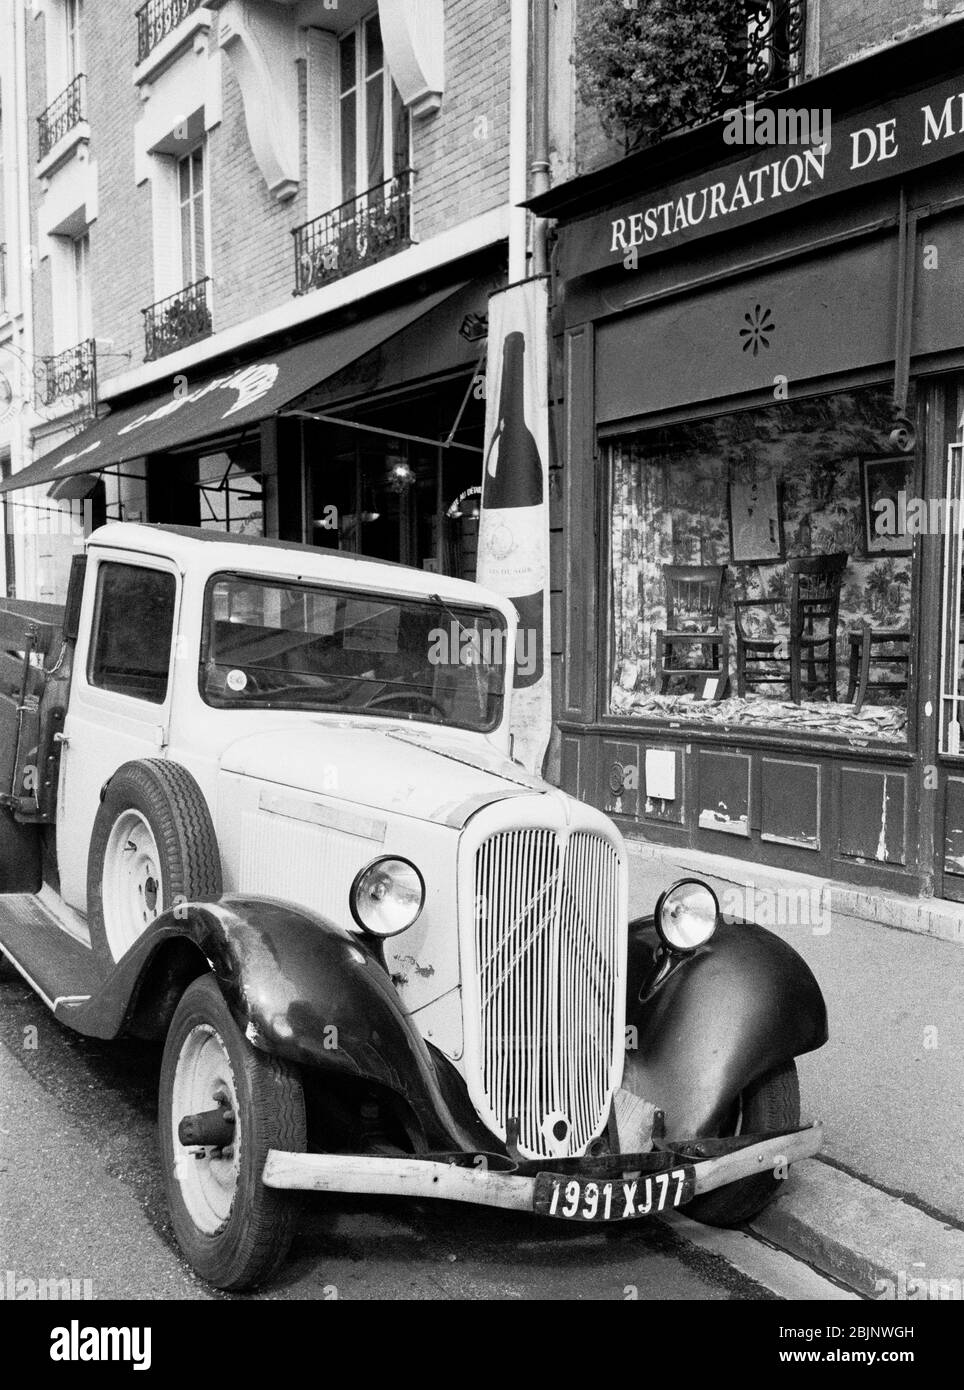 PARIS STREET PHOTOGRAPHY - OLD CITROEN VAN AND SHOPS - PARIS VINTAGE - PARIS FRANCE - SILVER FILM © Frédéric BEAUMONT Stock Photo